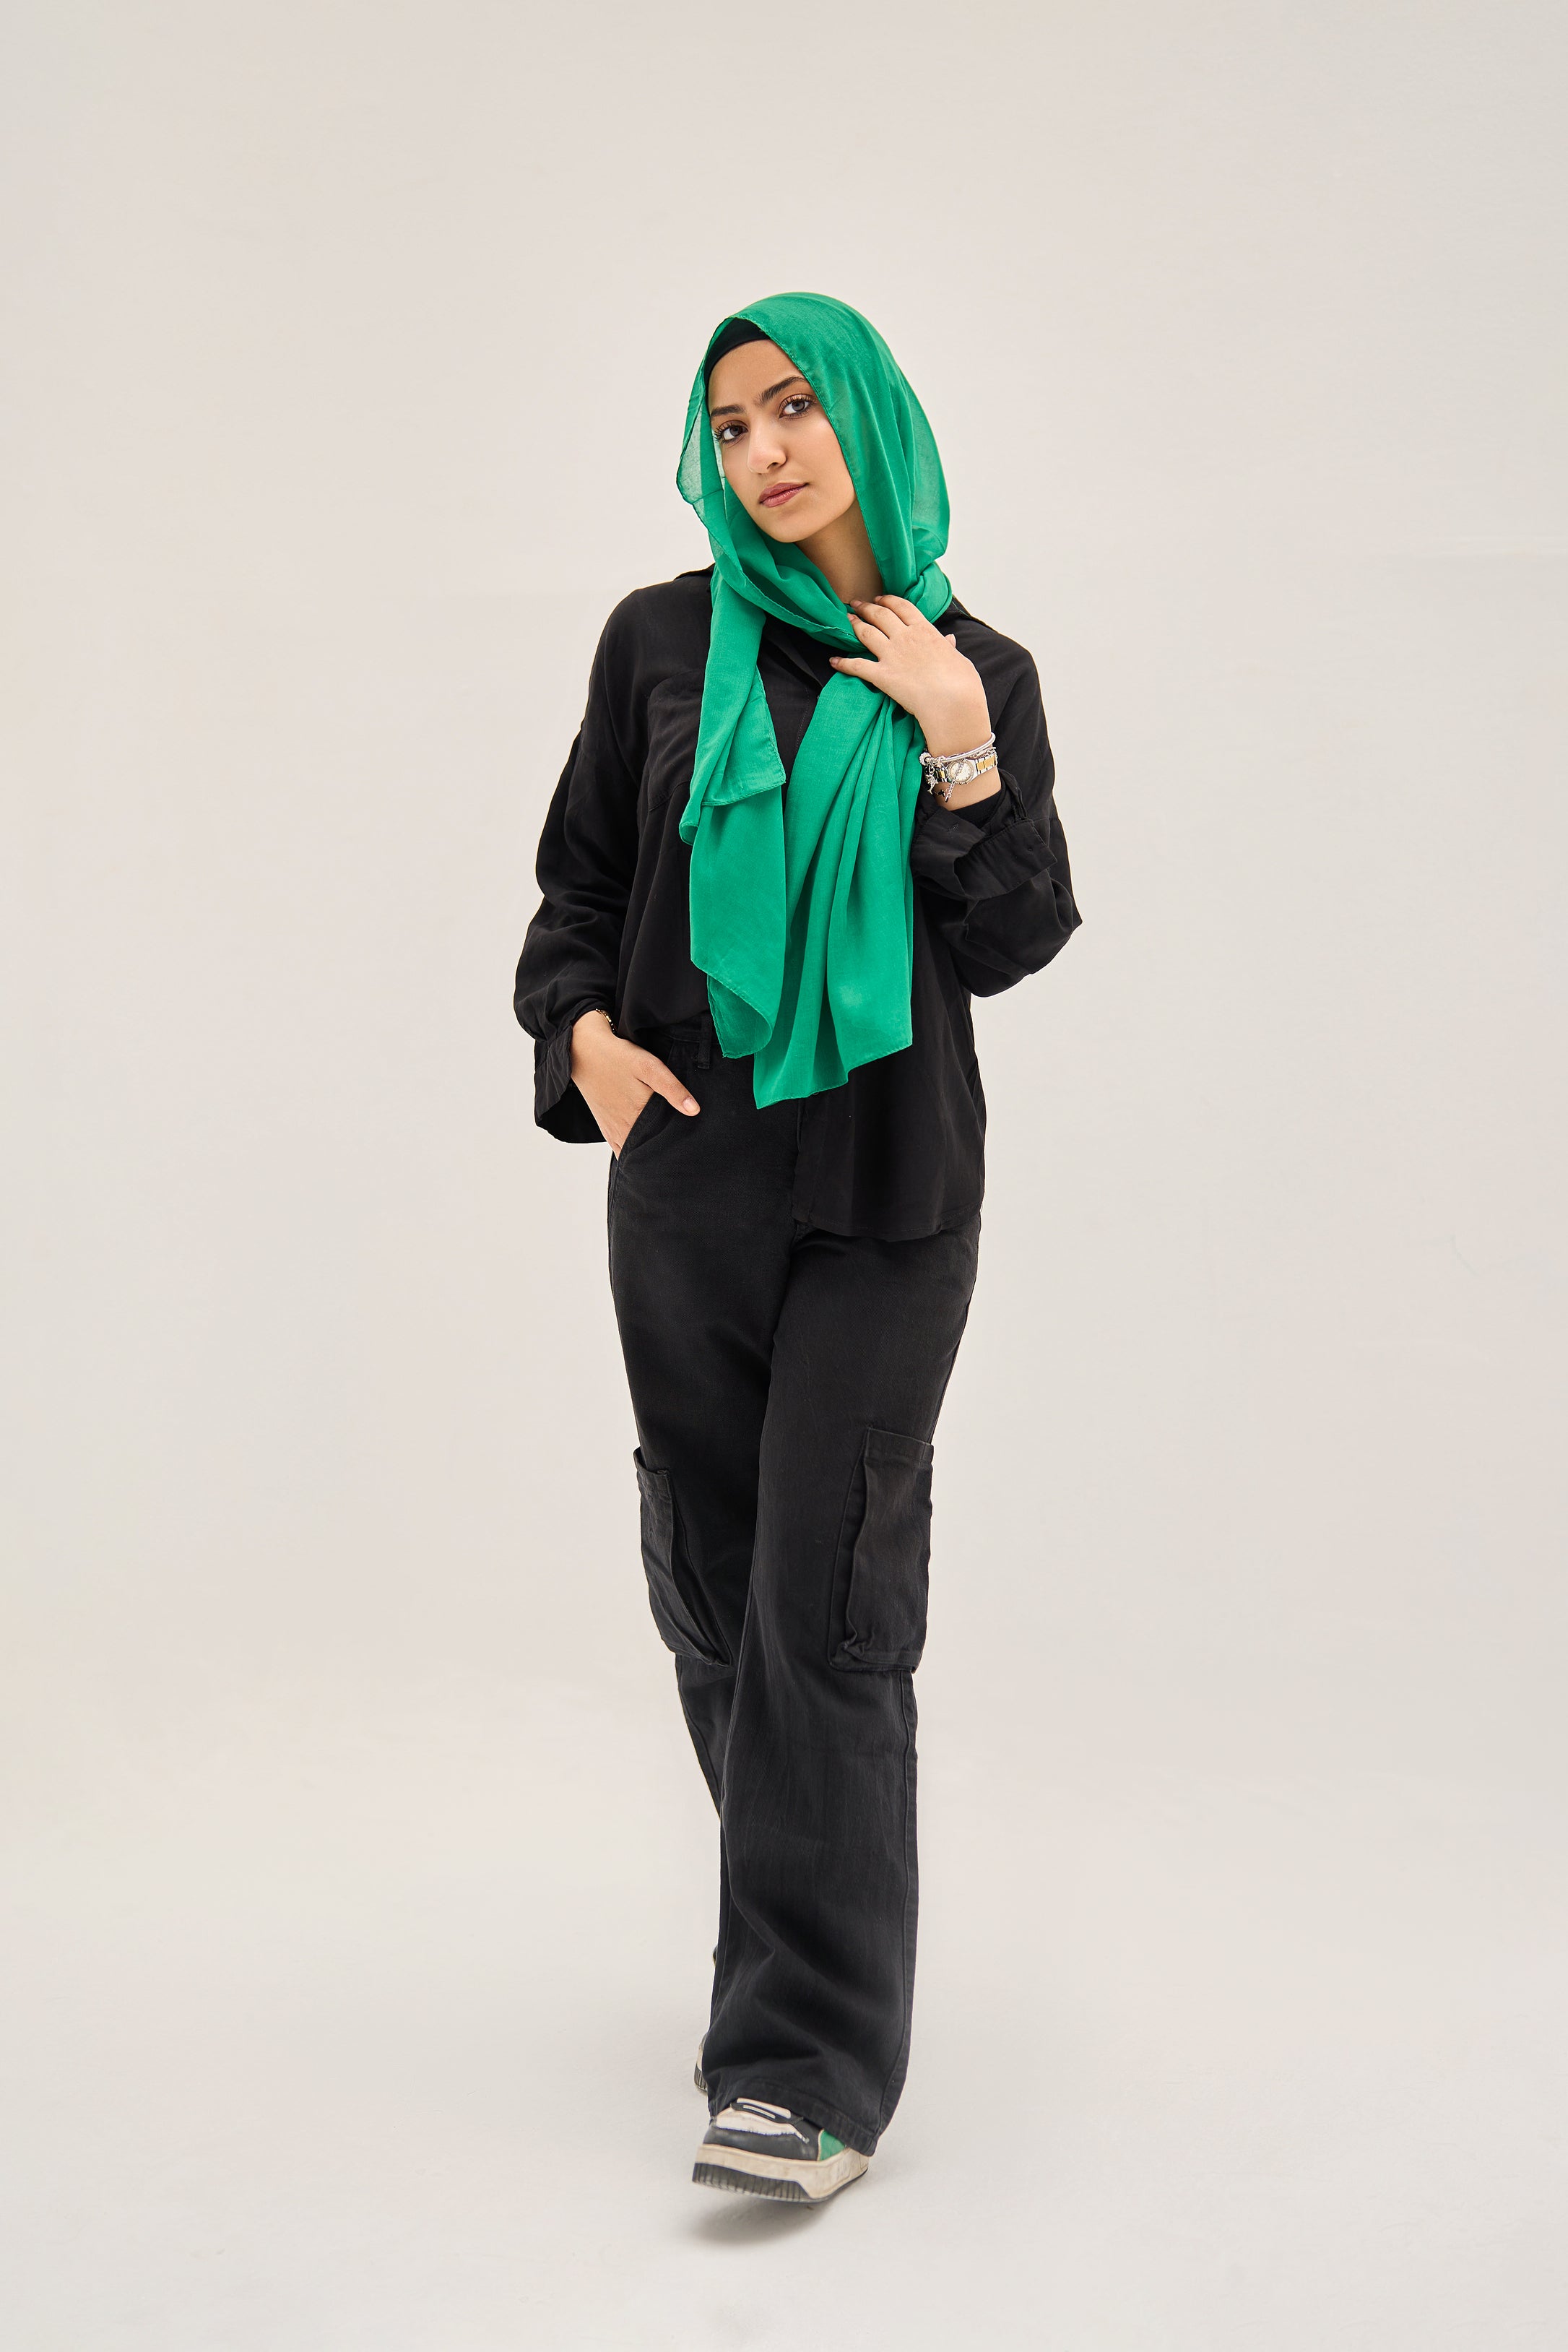 Royal Green Hijab